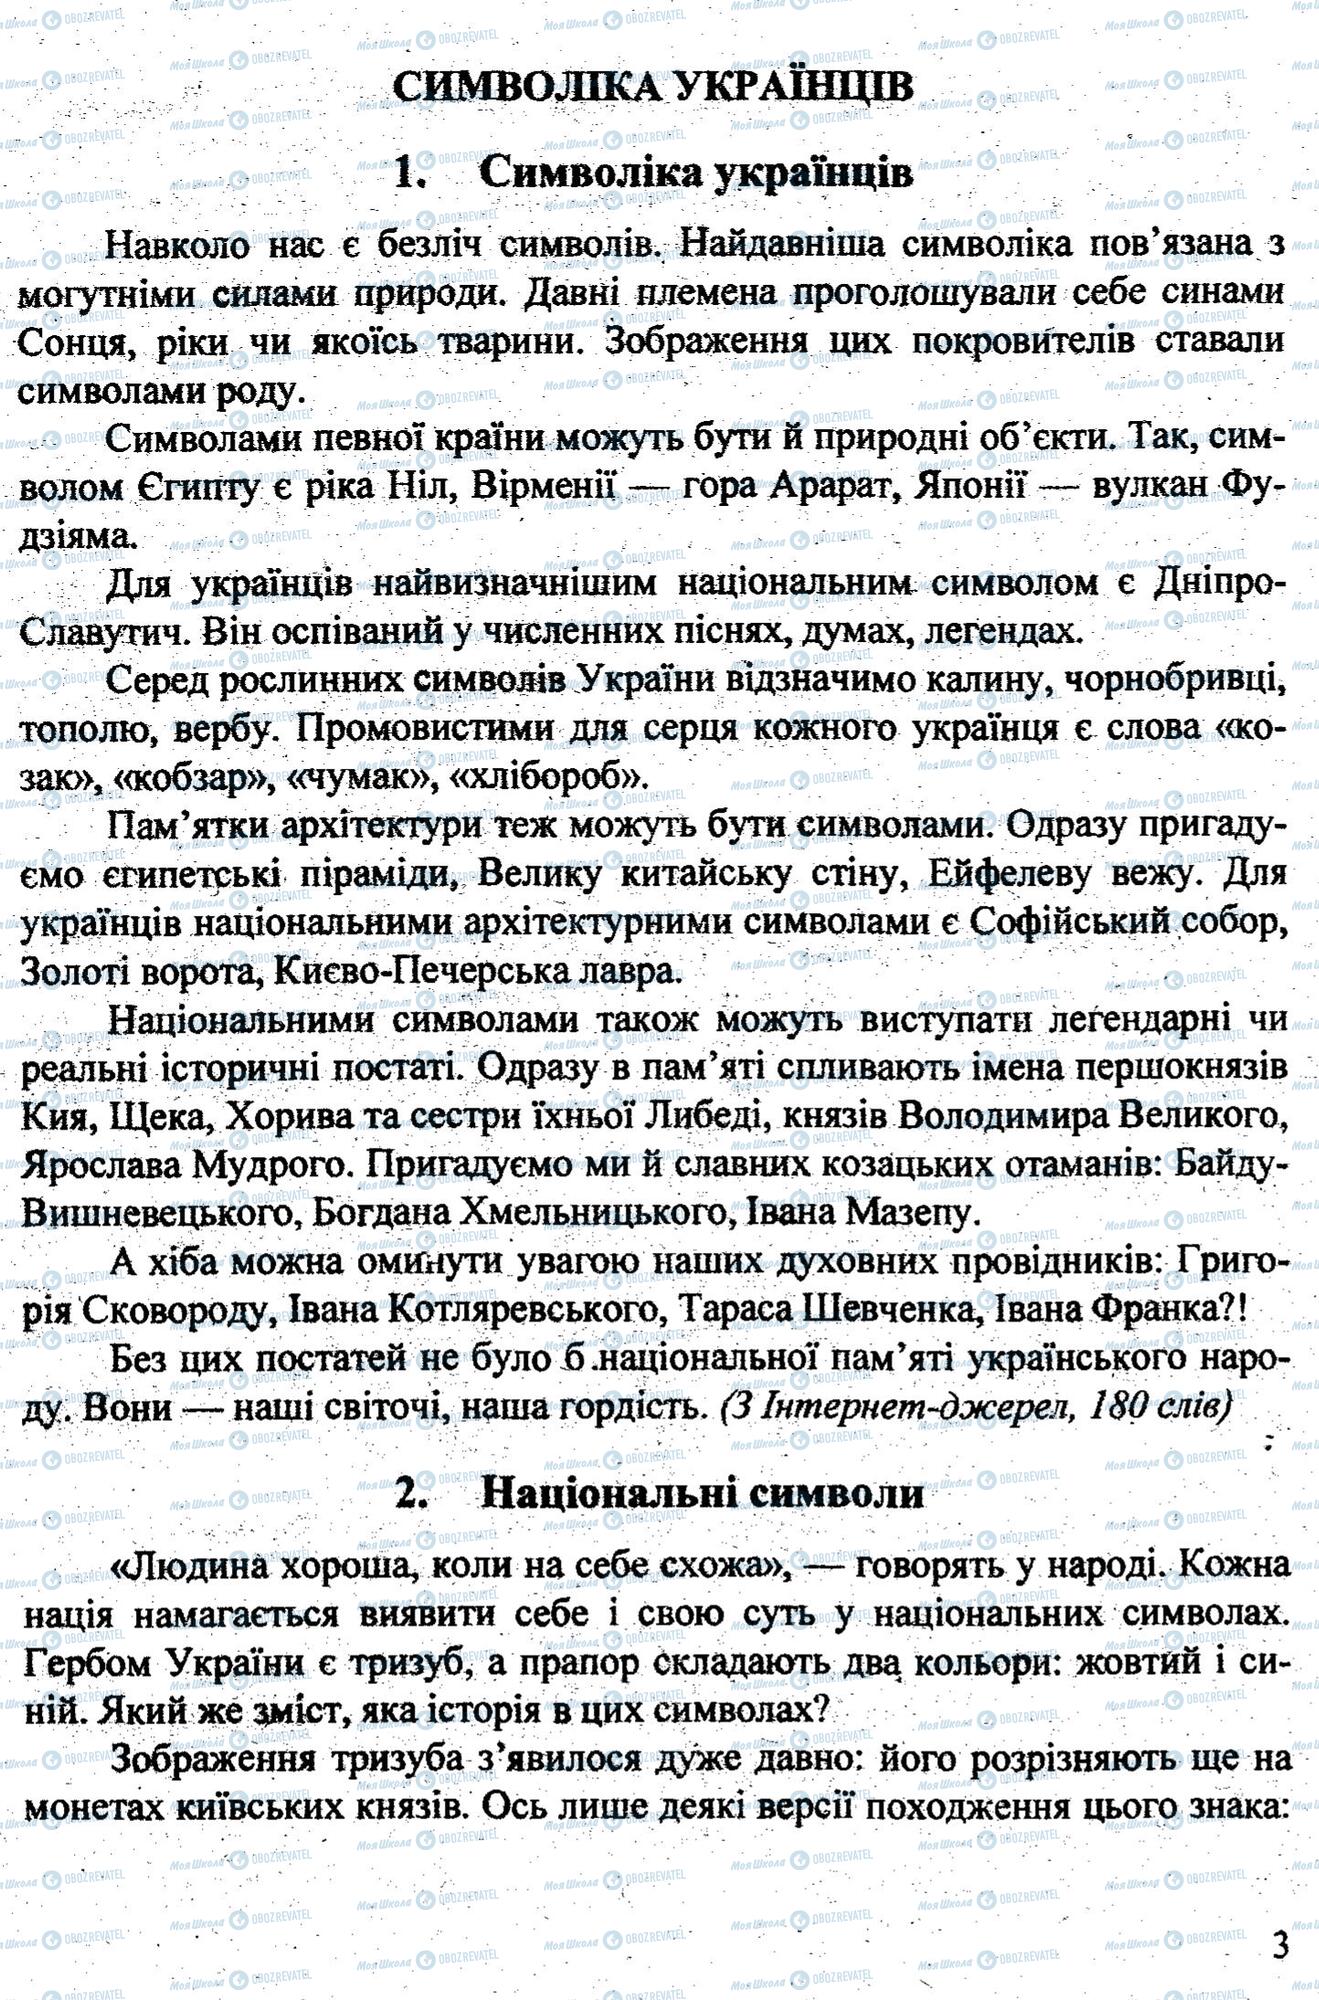 ДПА Укр мова 9 класс страница 0002